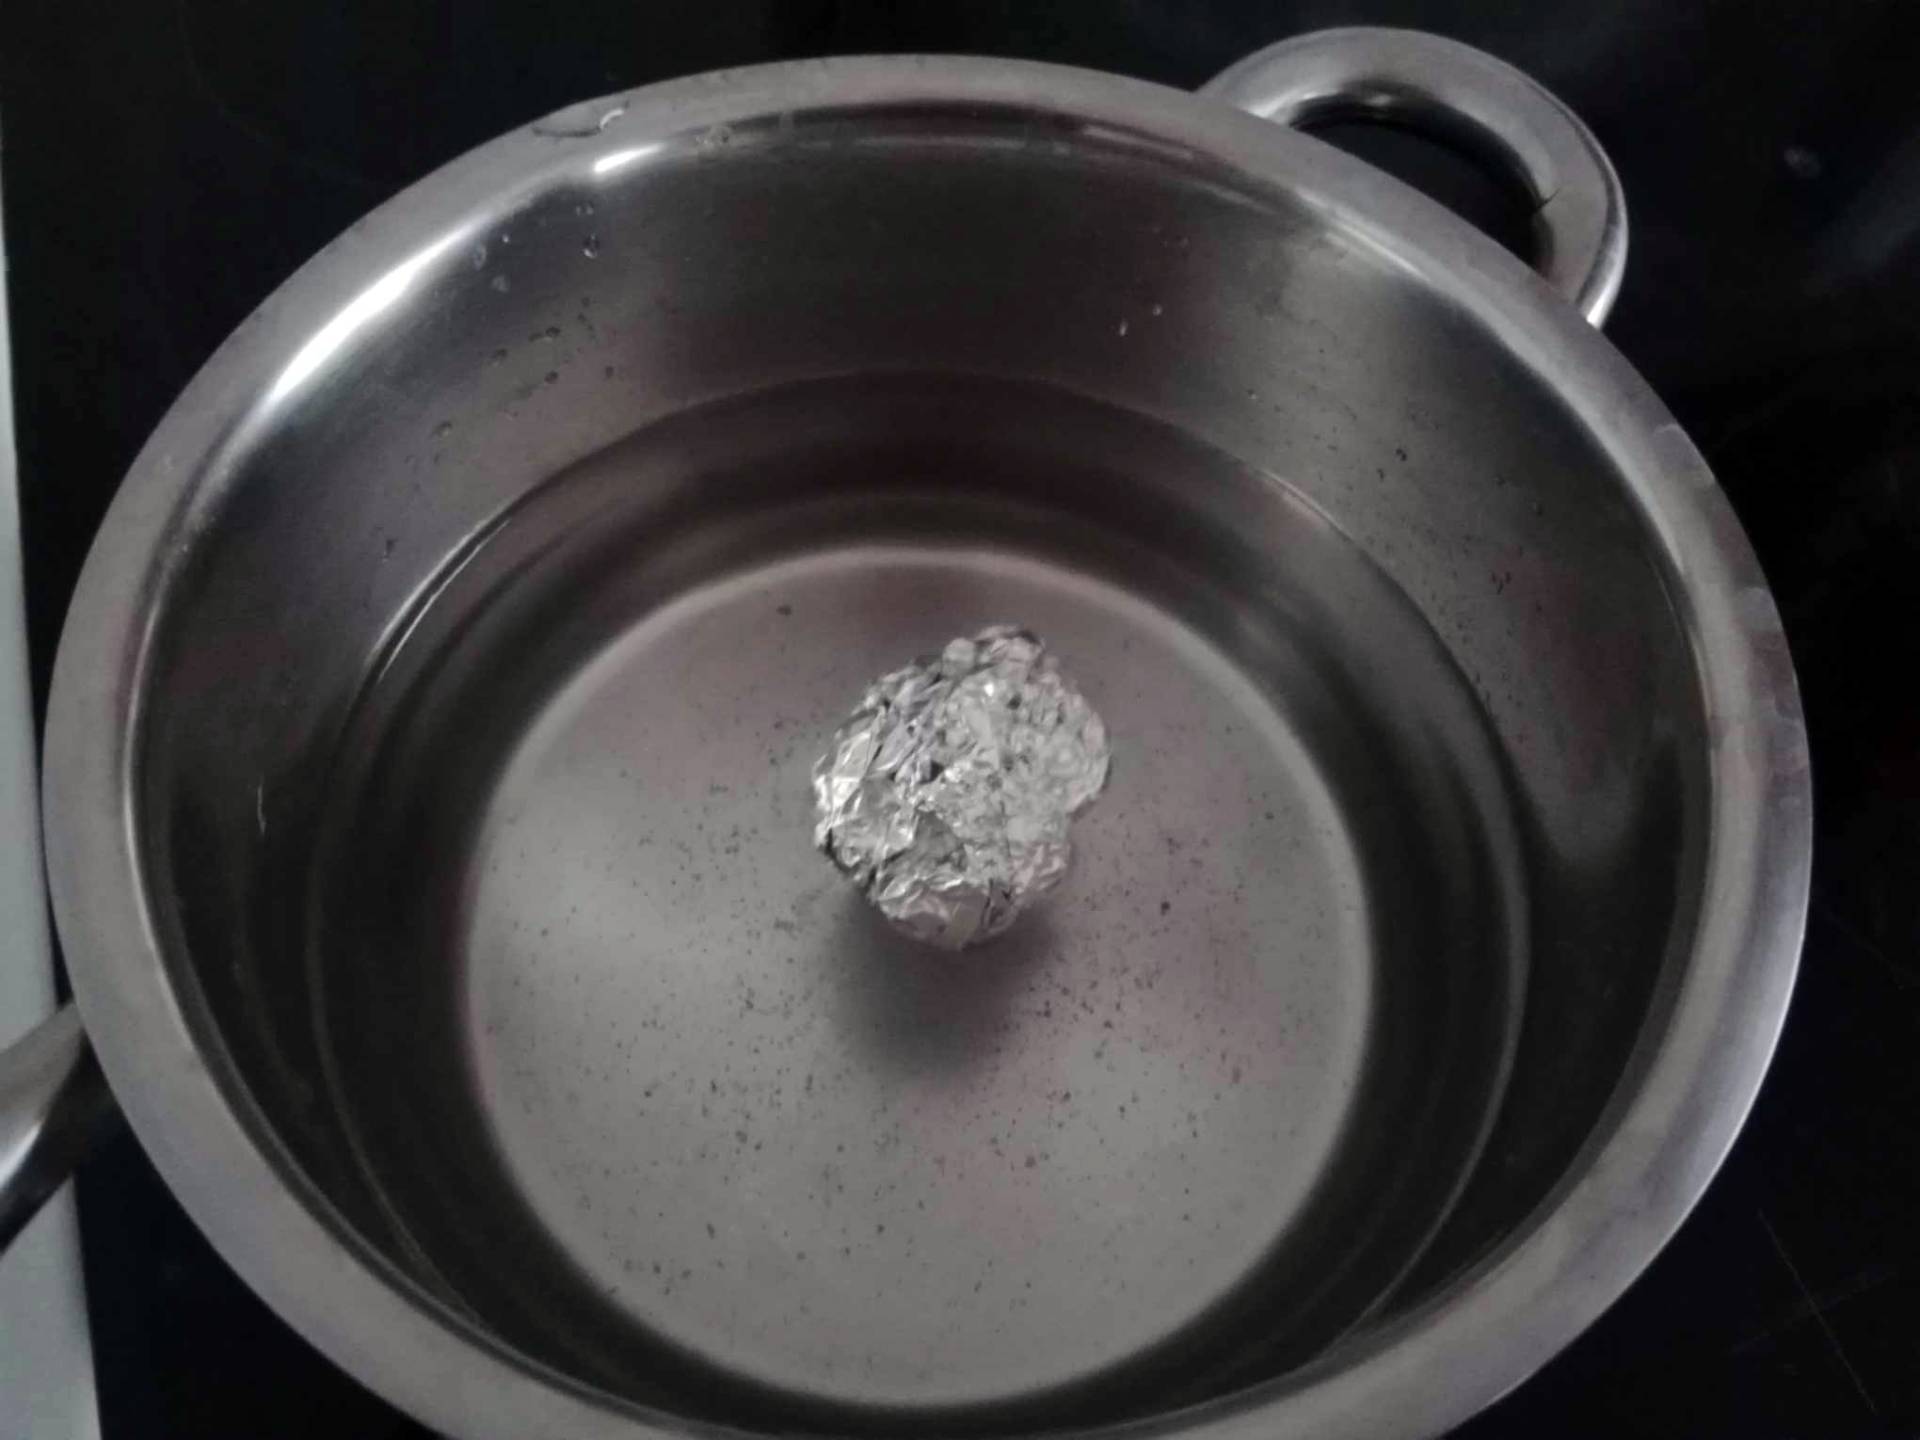 Kulkę folii aluminiowej wrzucam do gotującej się wody. W 10 minut pozbywam się nieznośnego problemu